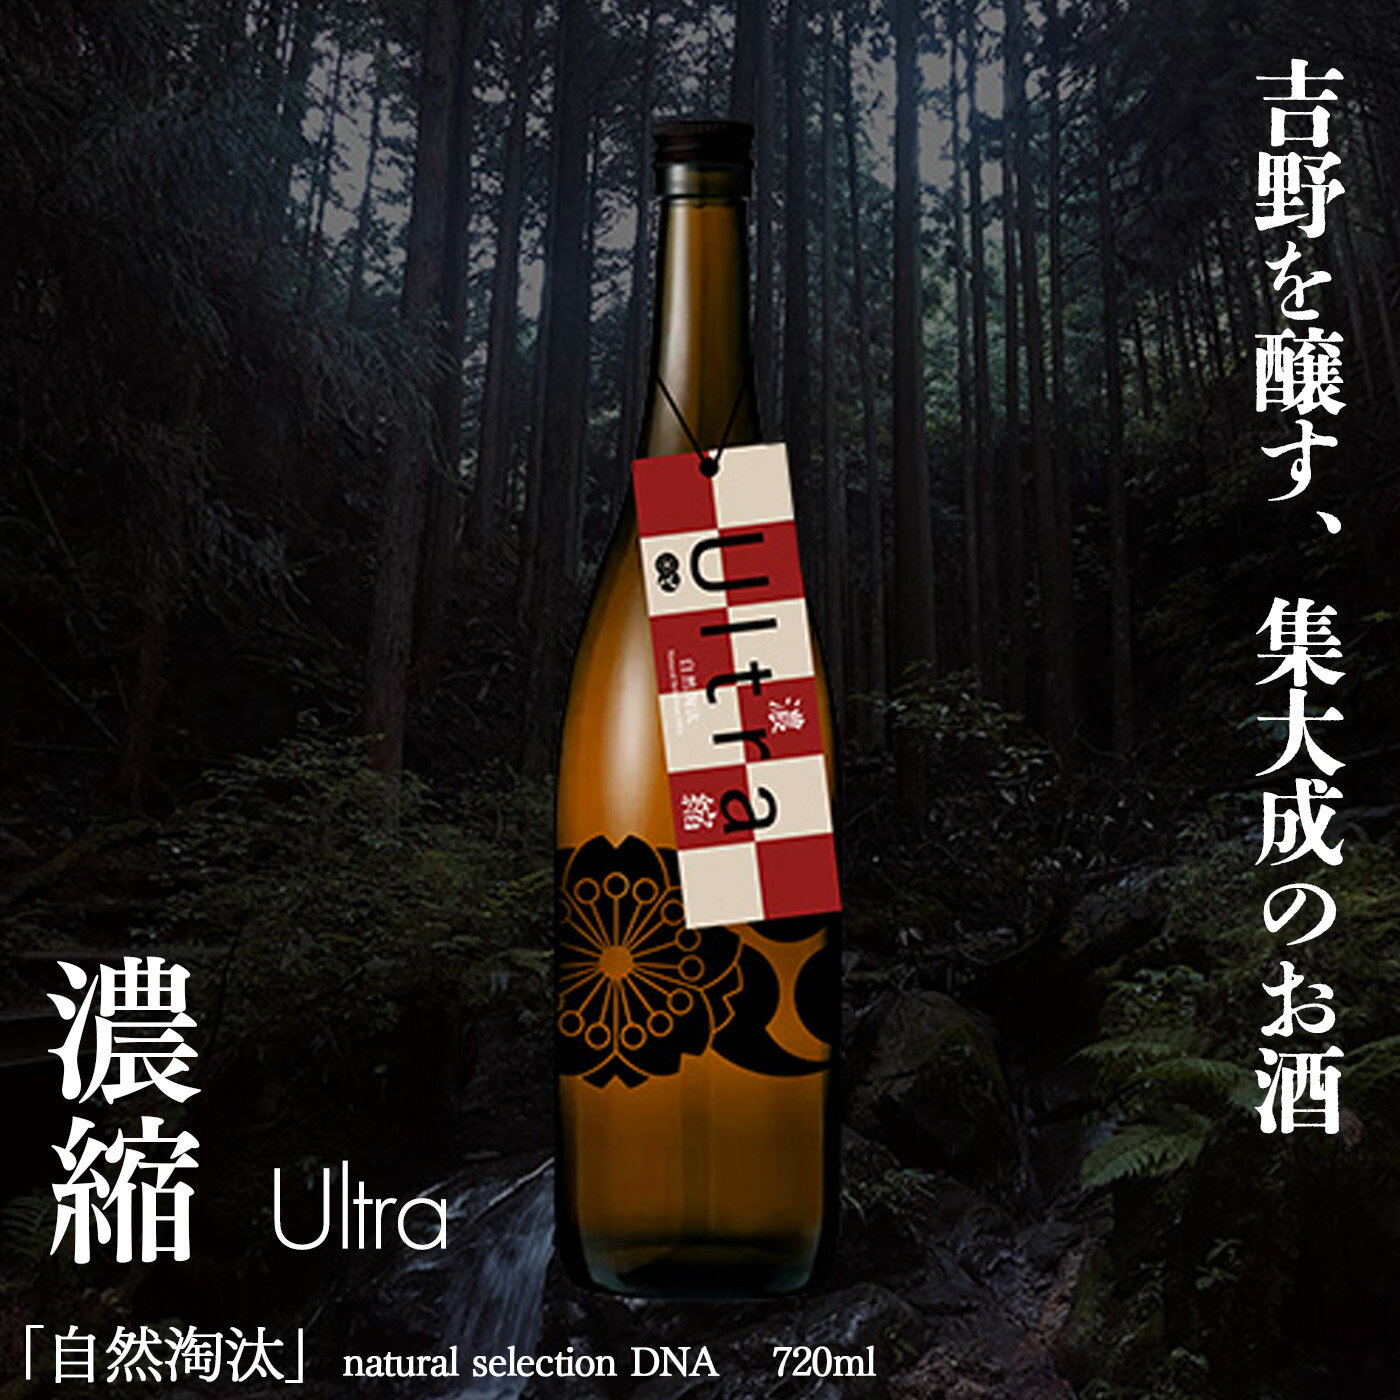 【ふるさと納税】自然淘汰 natural selection DNA Ultra 濃縮 日本酒 720ml 酒 美吉野酒造 奈良県 吉野町